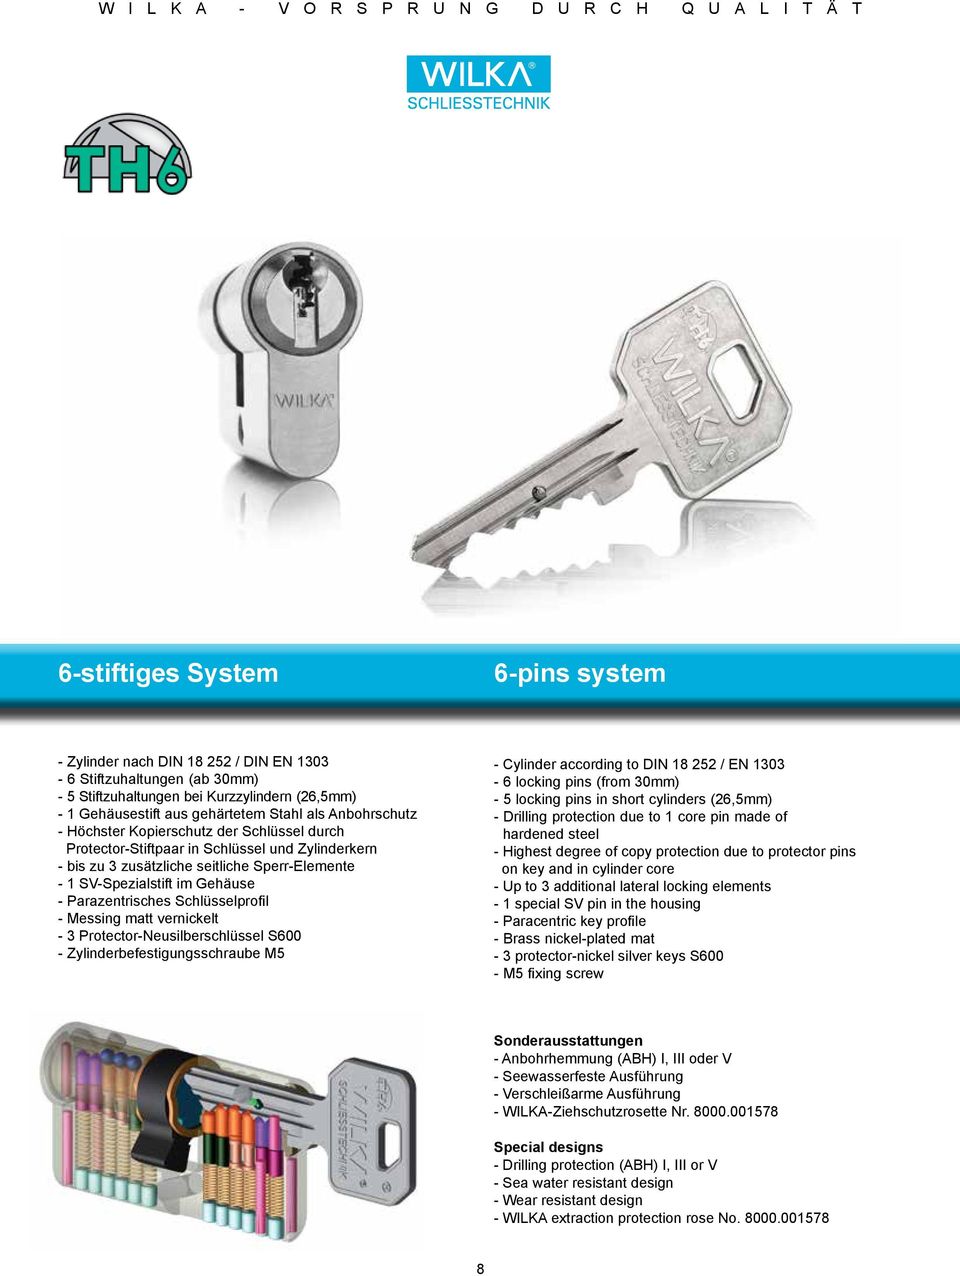 Parazentrisches Schlüsselprofil - Messing matt vernickelt - 3 Protector-Neusilberschlüssel S600 - Zylinderbefestigungsschraube M5 - Cylinder according to DIN 18 252 / EN 1303-6 locking pins (from